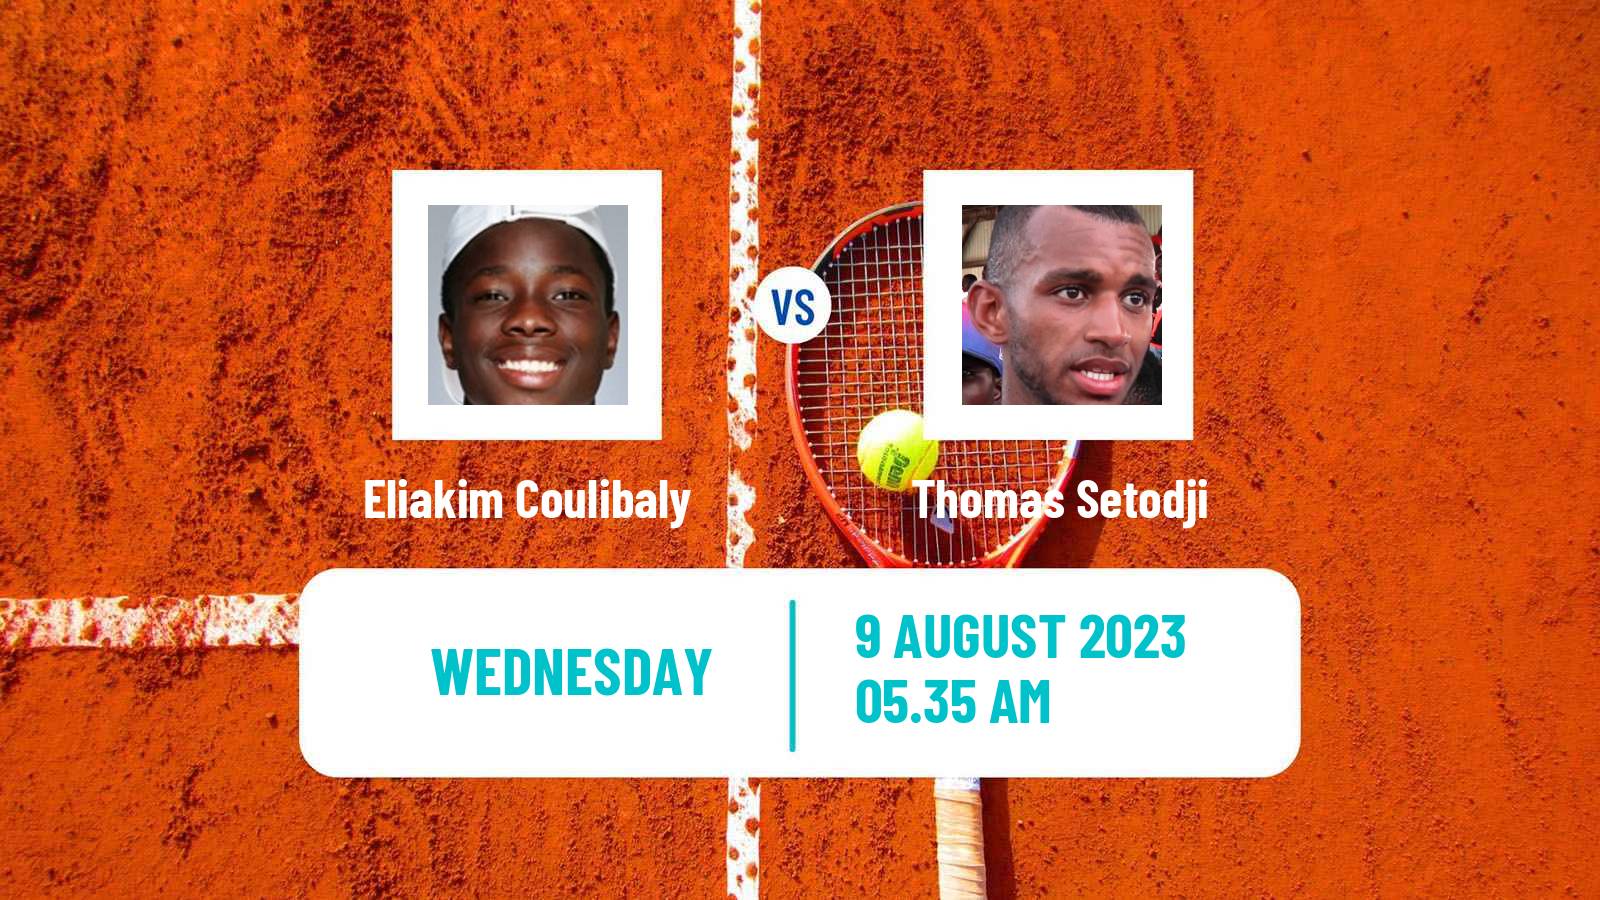 Tennis Davis Cup Group III Eliakim Coulibaly - Thomas Setodji